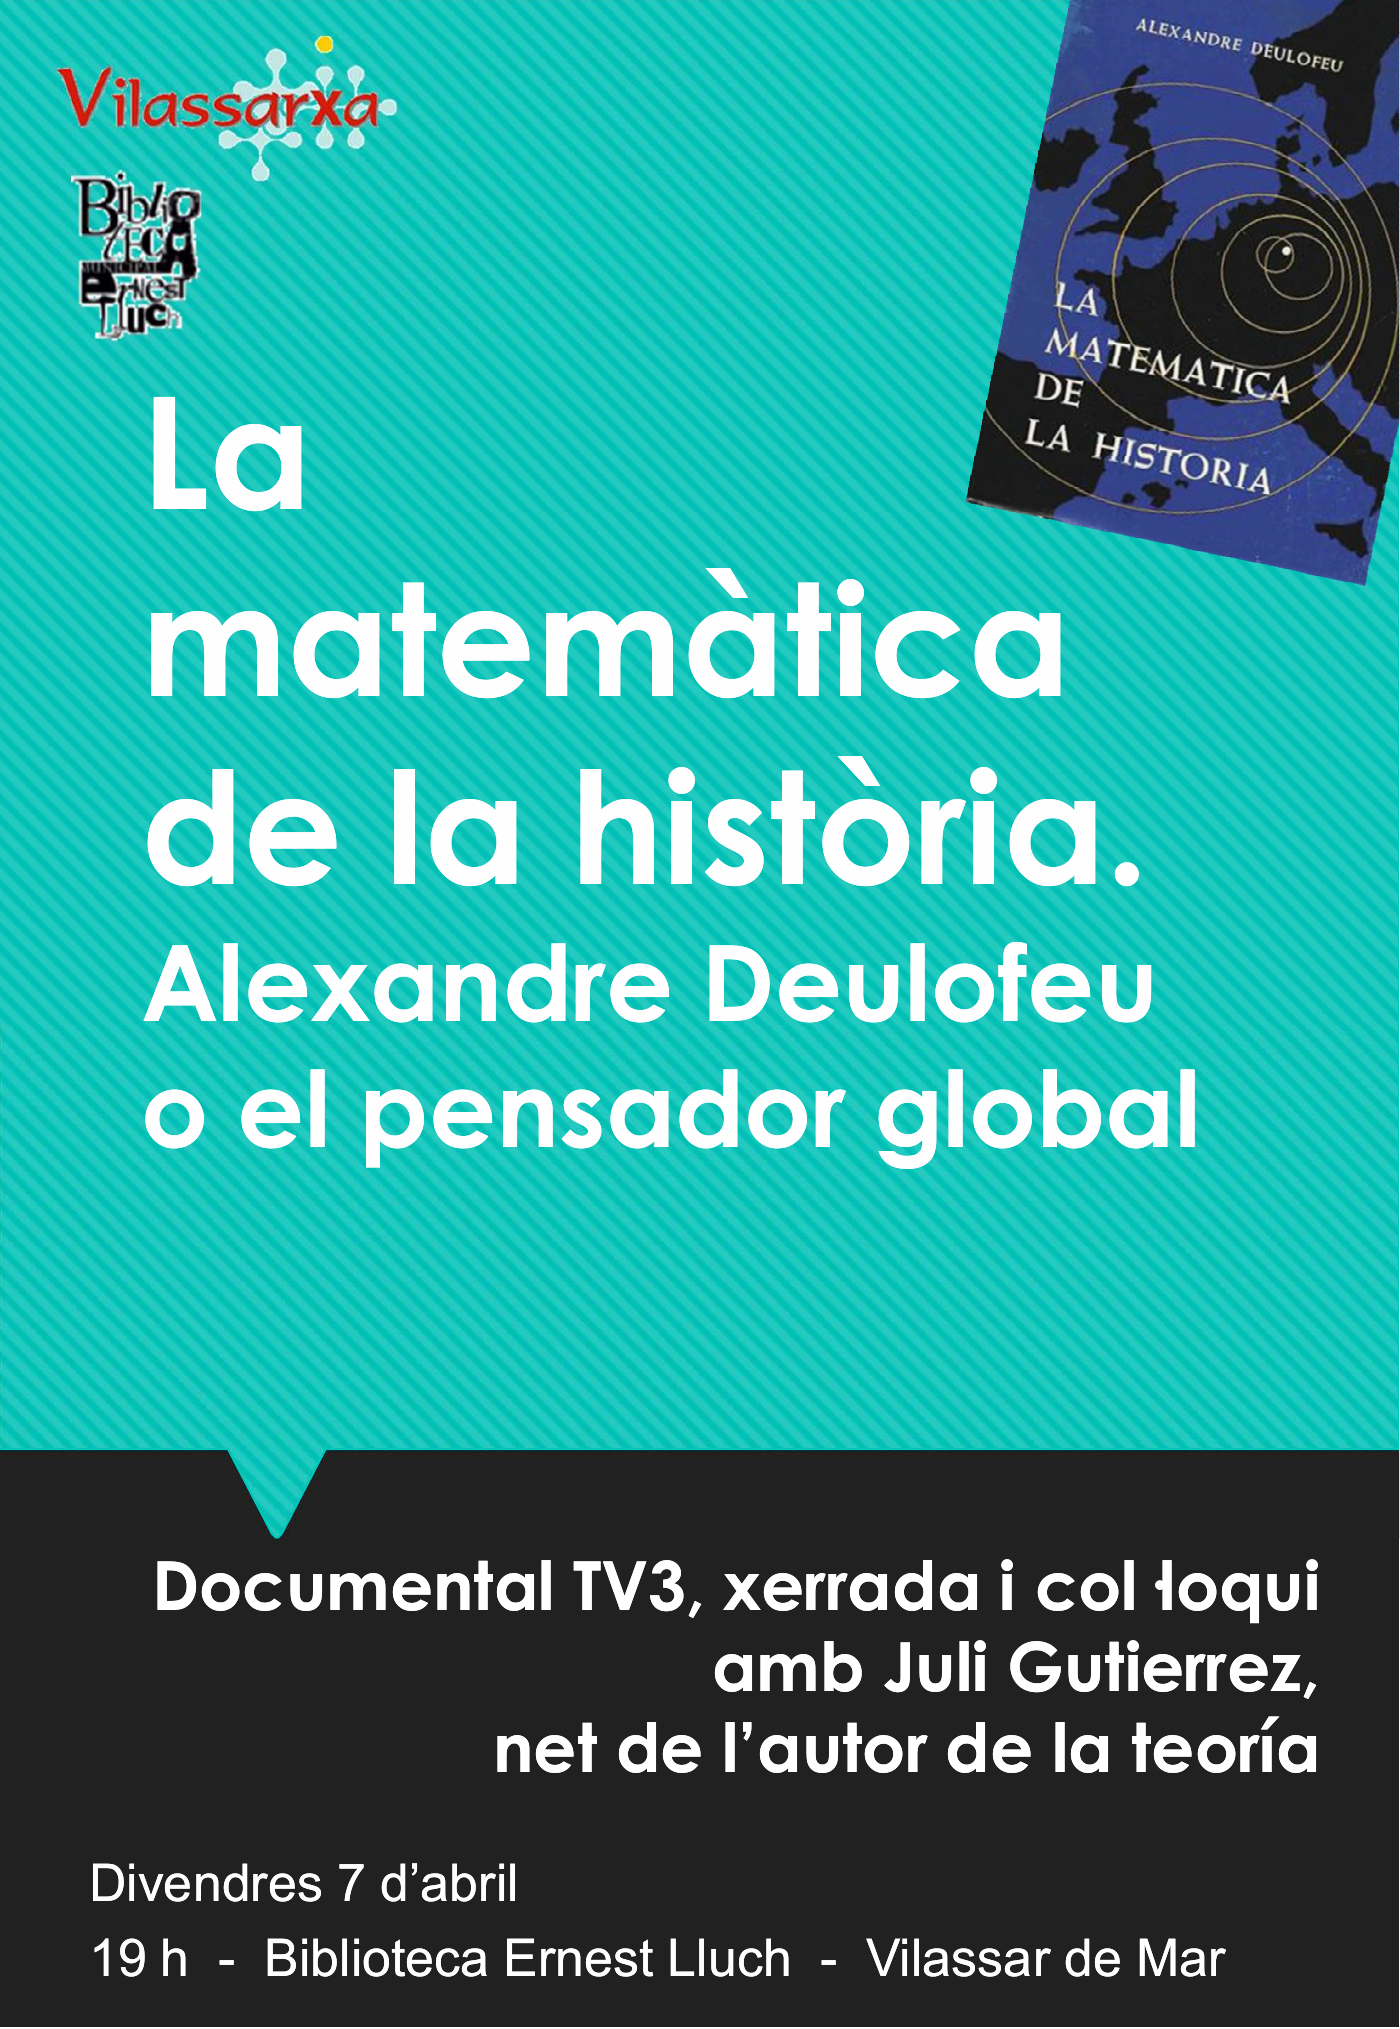 Presentació documental Alexandre Deulofeu a Vilassar de Mar.